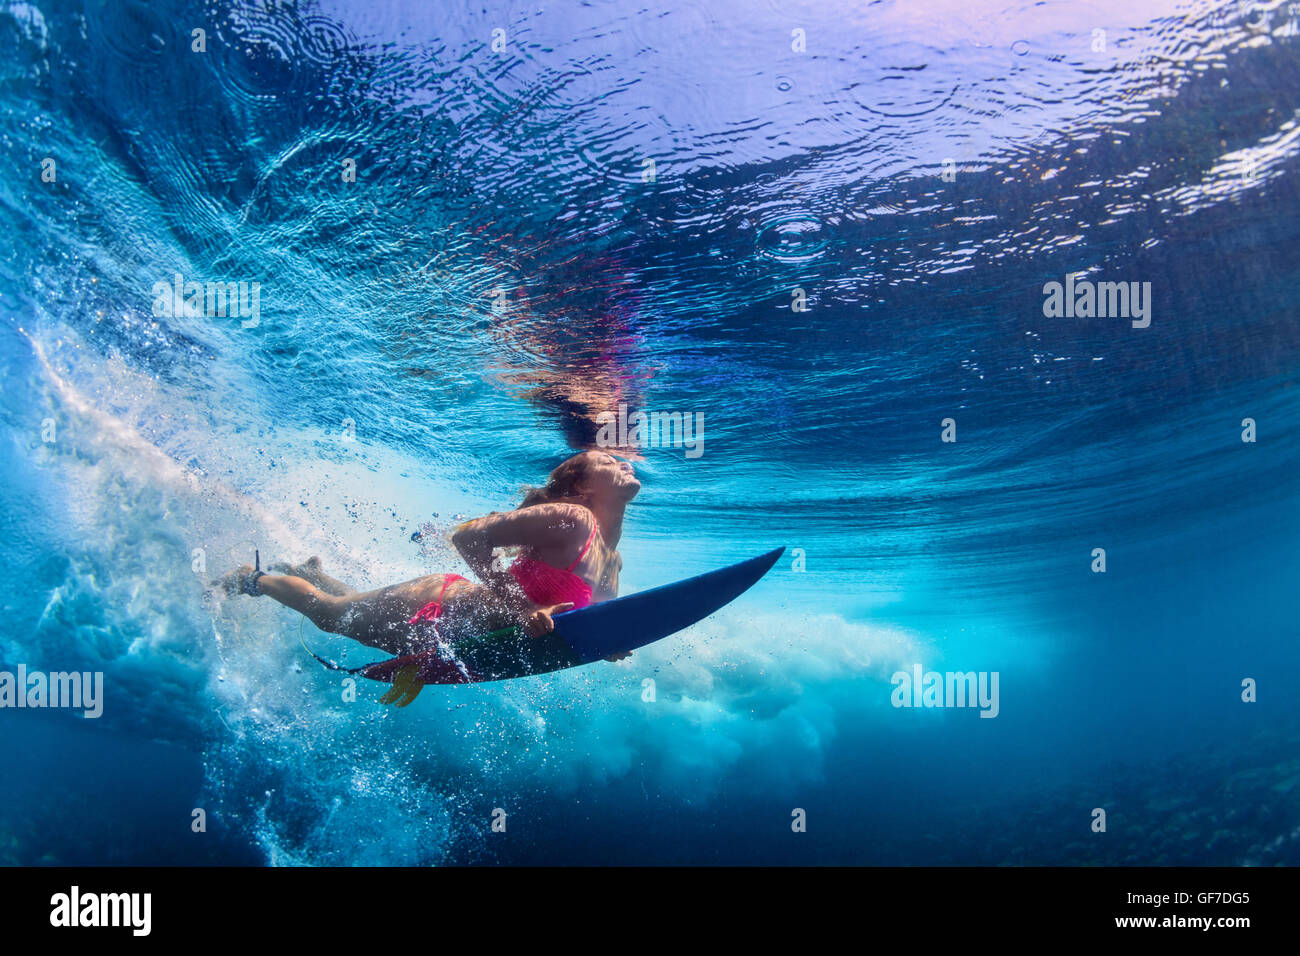 Jeune active girl wearing bikini en action - surfer avec planche de surf sous-marine Plongée sous les grandes vagues de l'océan atlantique. Banque D'Images